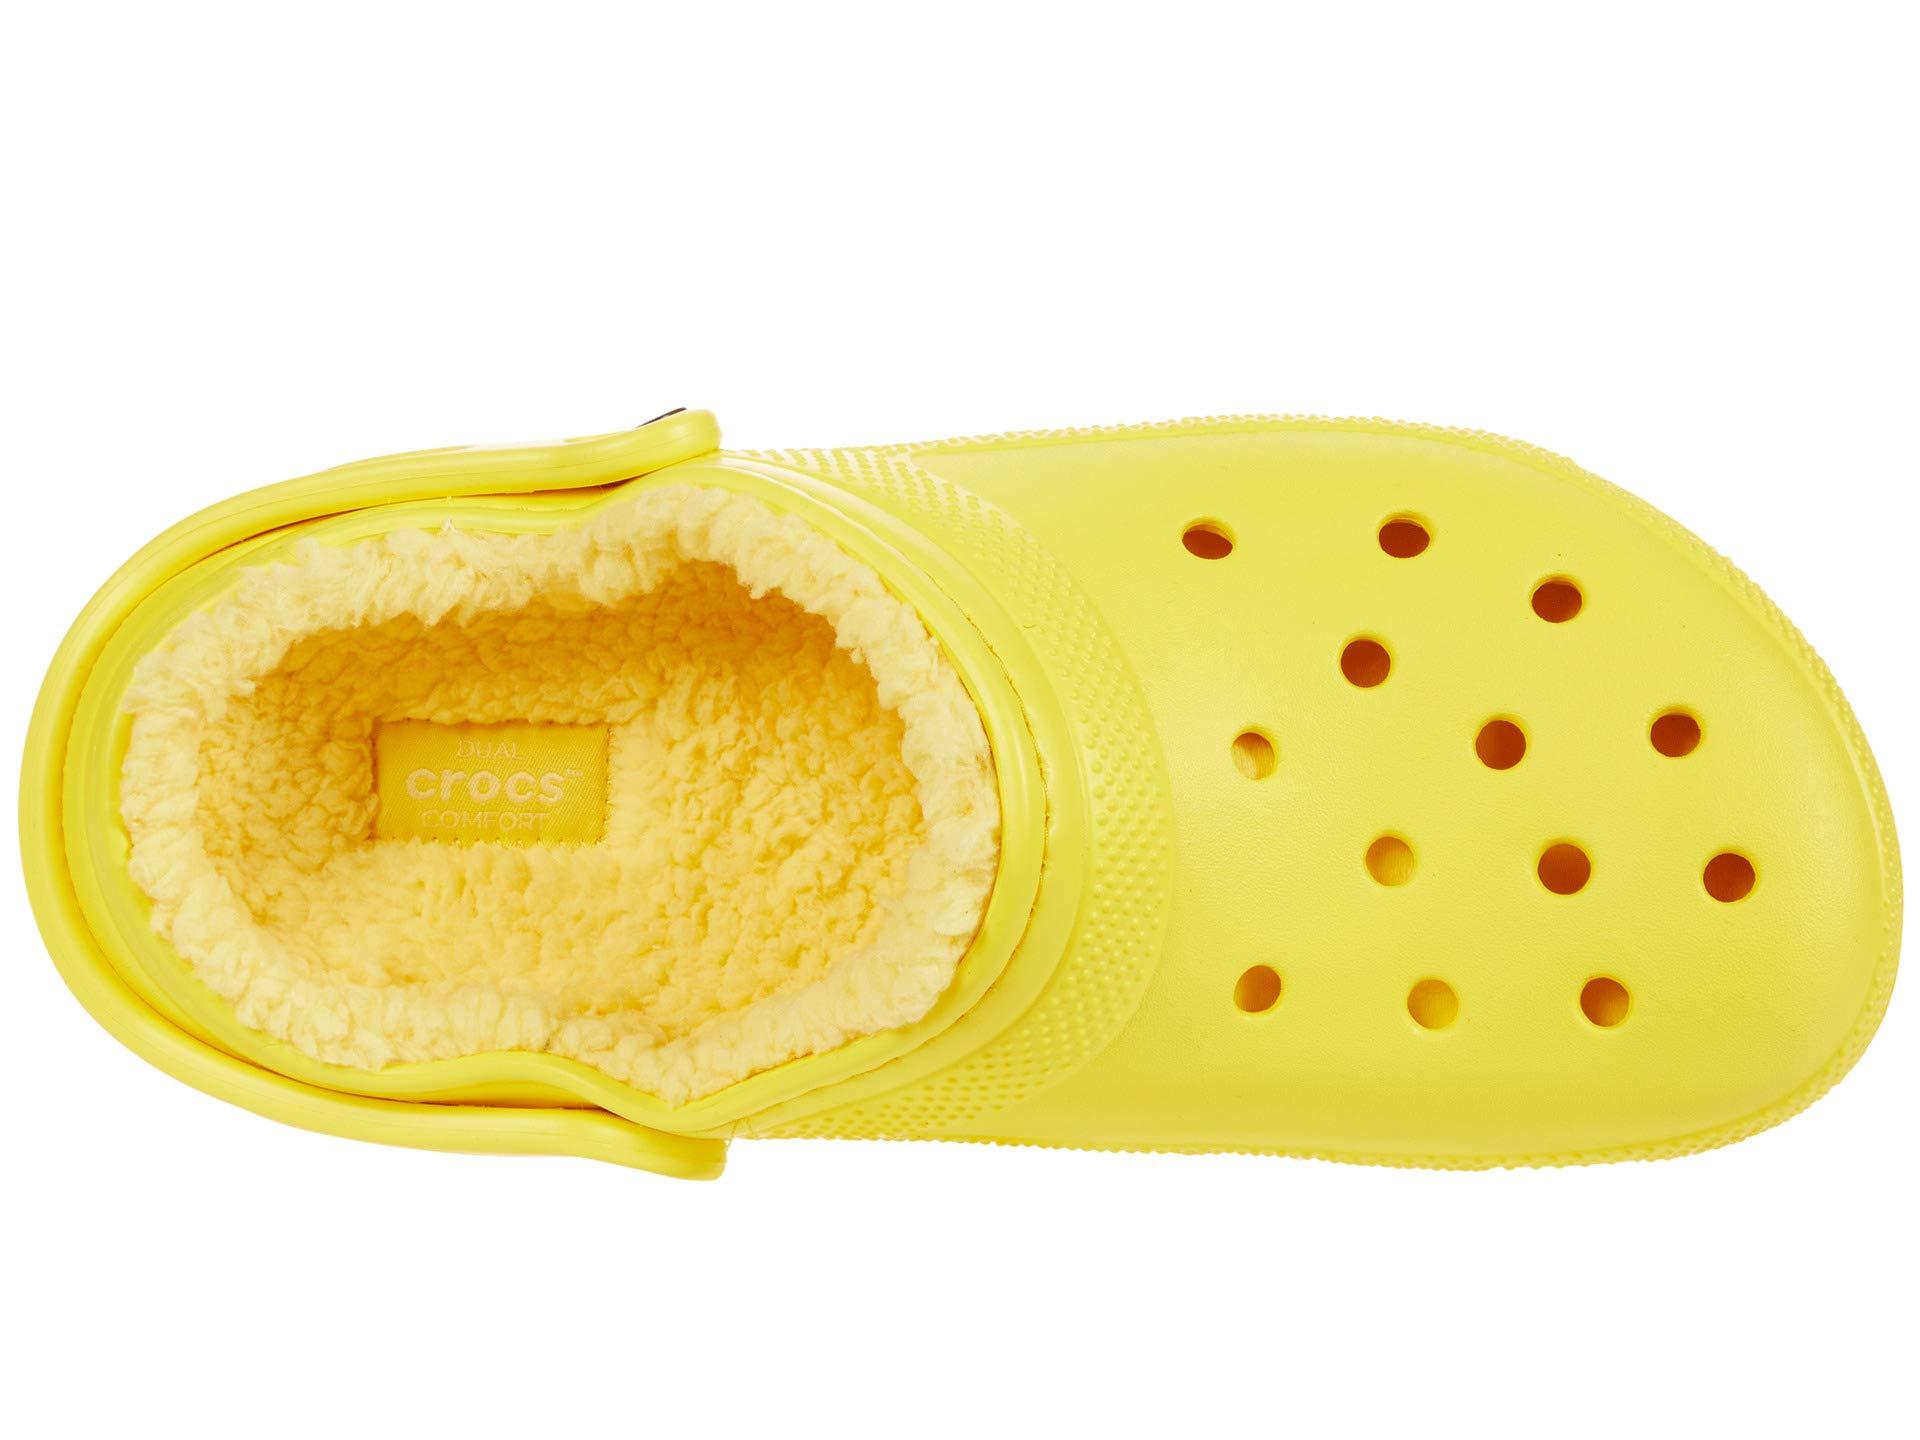 yellow fuzzy crocs